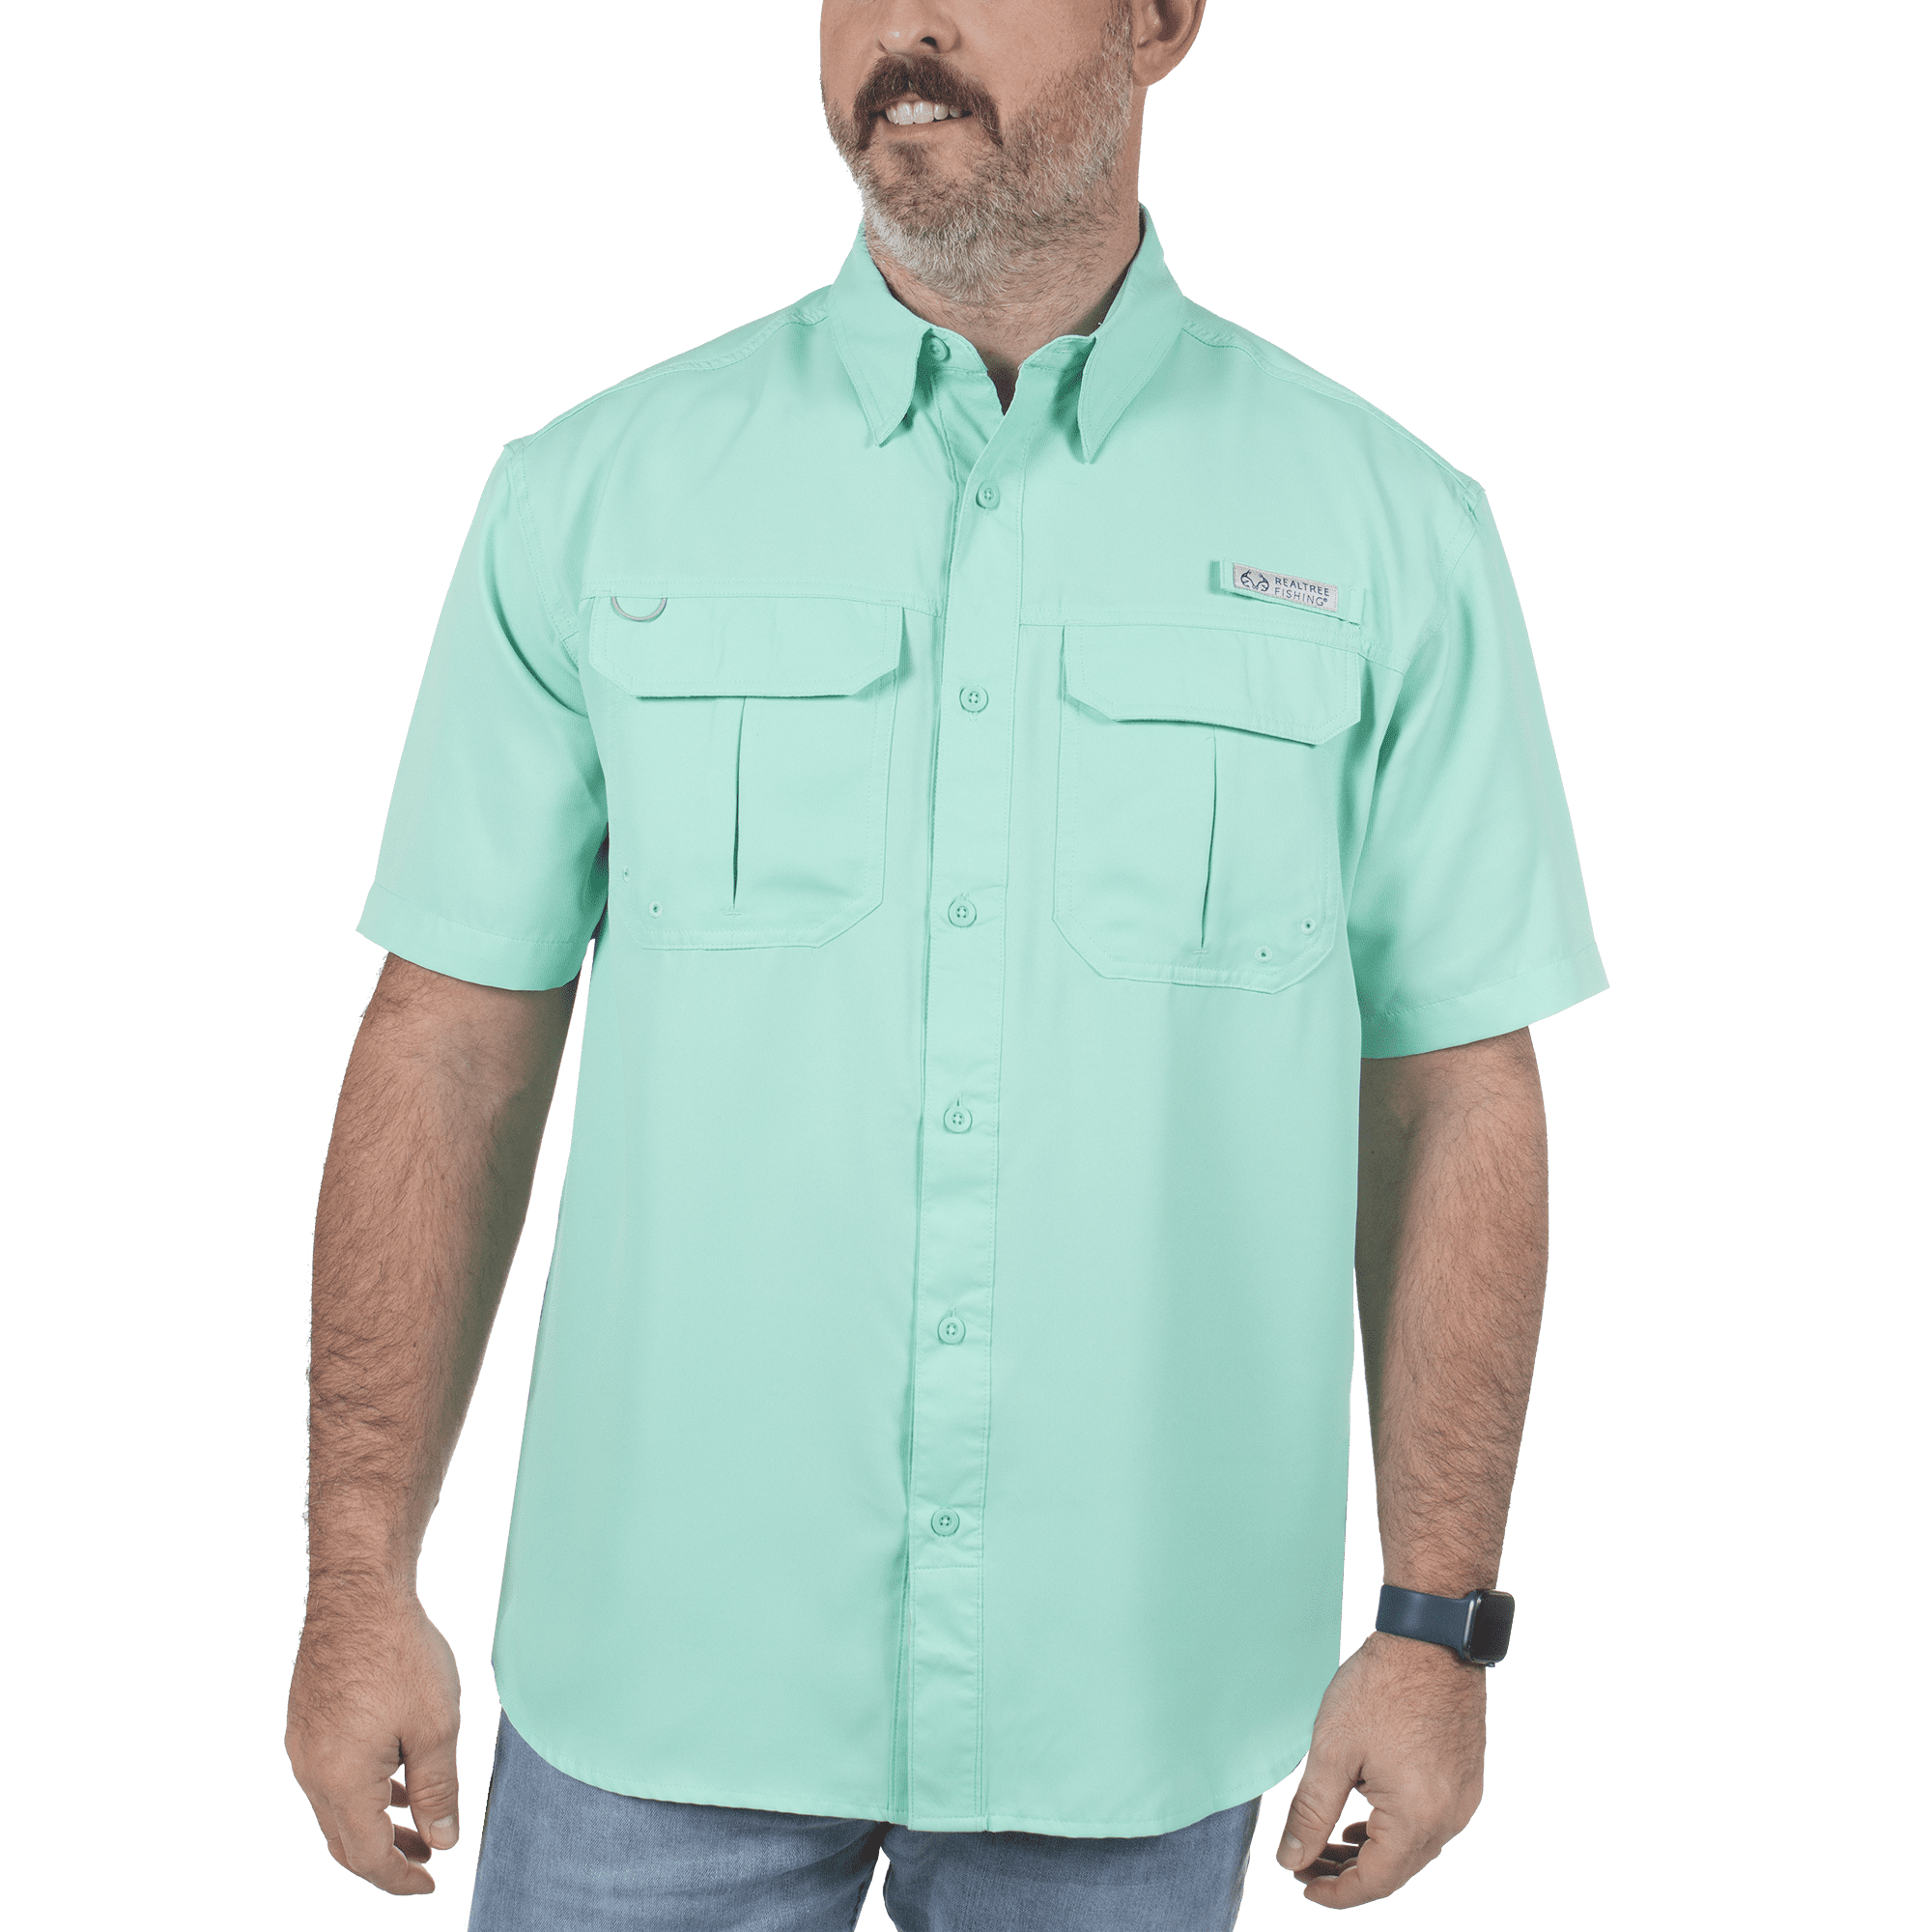 Men's Fishing Shirt, 6xl Fishing Shirt